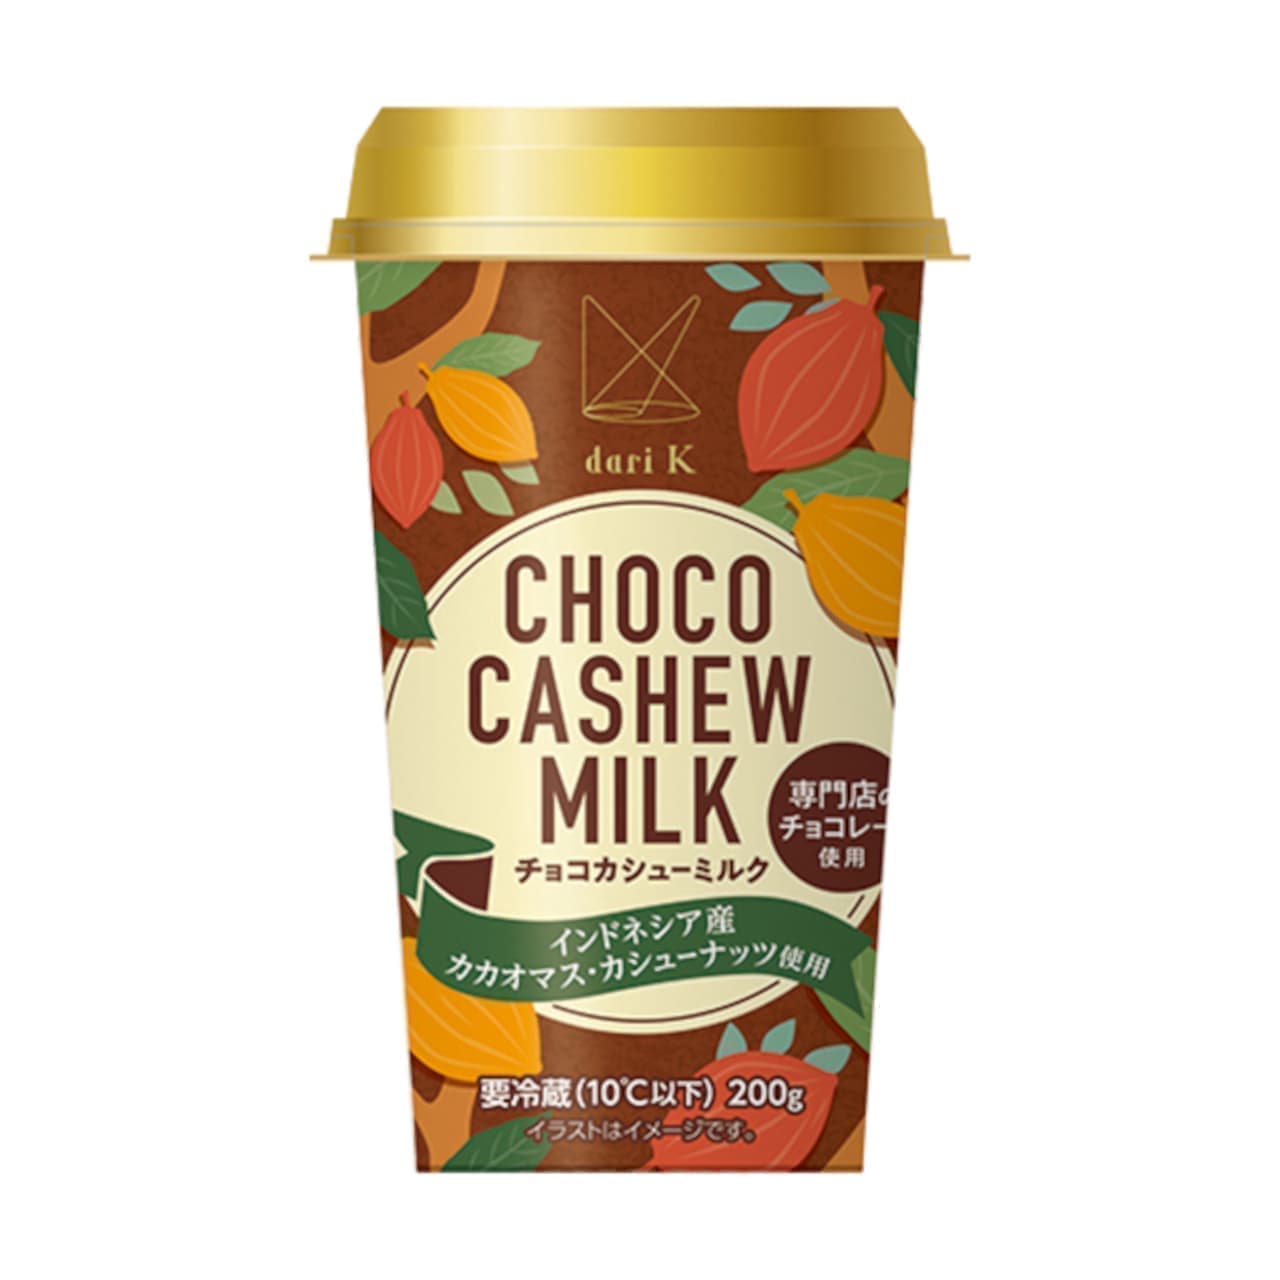 Famima "Choco Cashew Milk